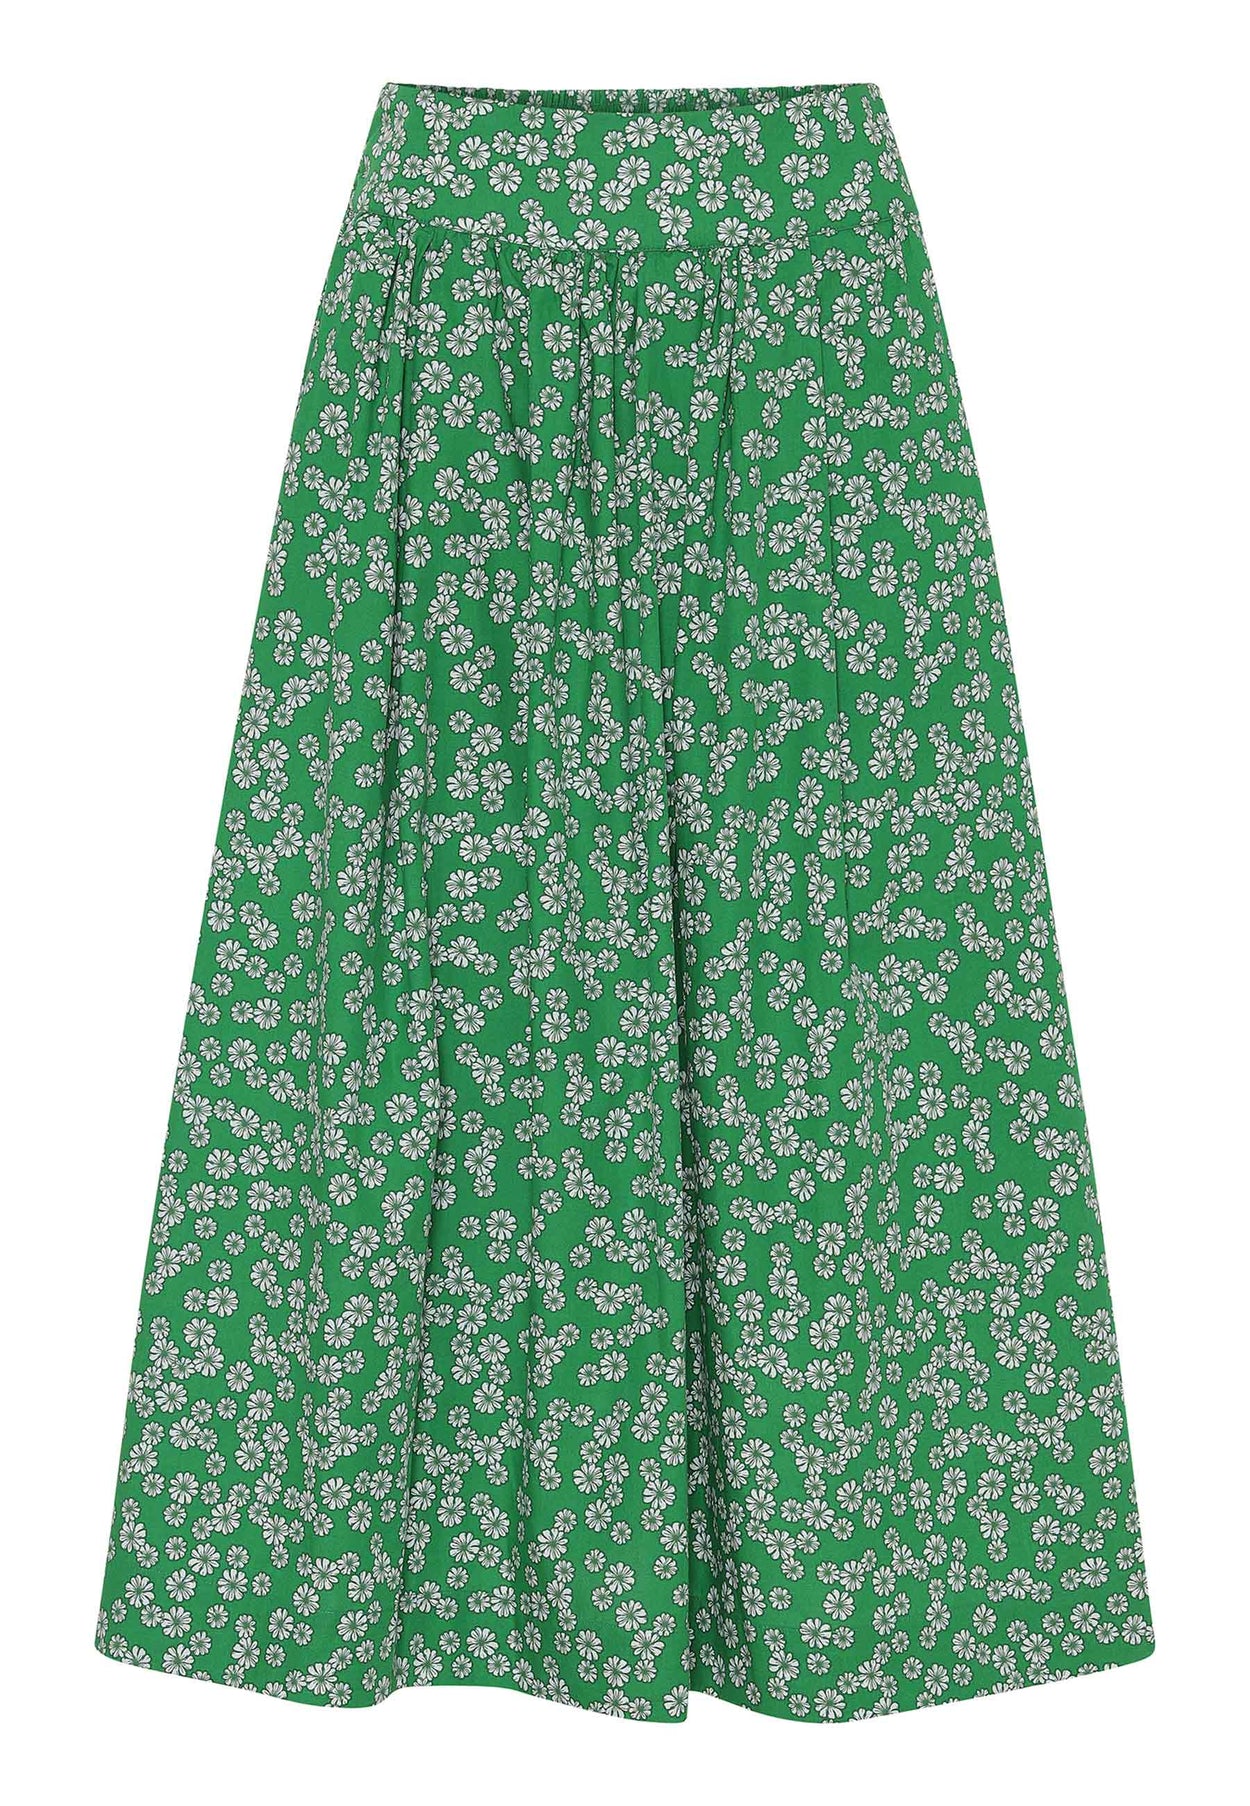 GROBUND Mette nederdelen - den lange i grøn med blomster